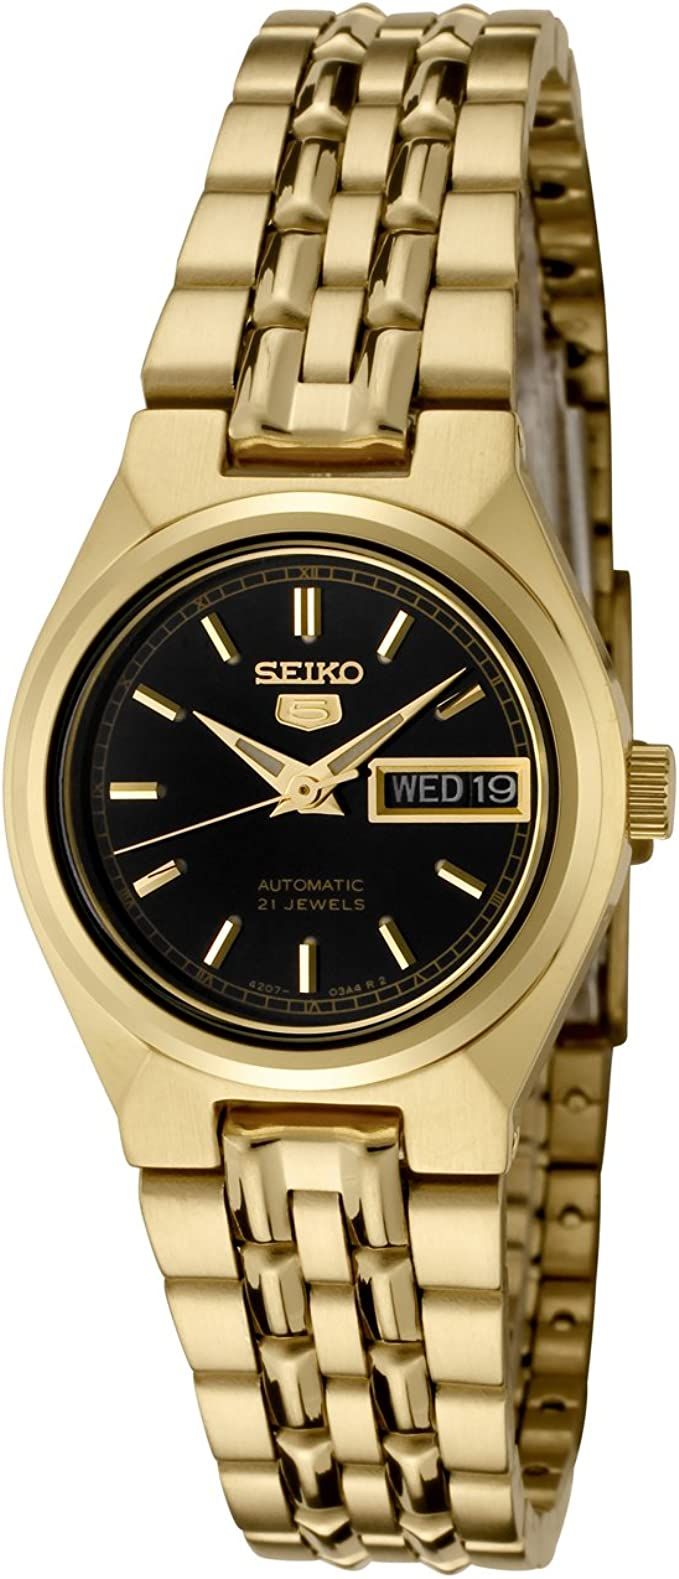 Seiko Women's SYMA06K Seiko 5 Automatic Black Dial Gold-Tone Stainless Steel Watch | Amazon (US)